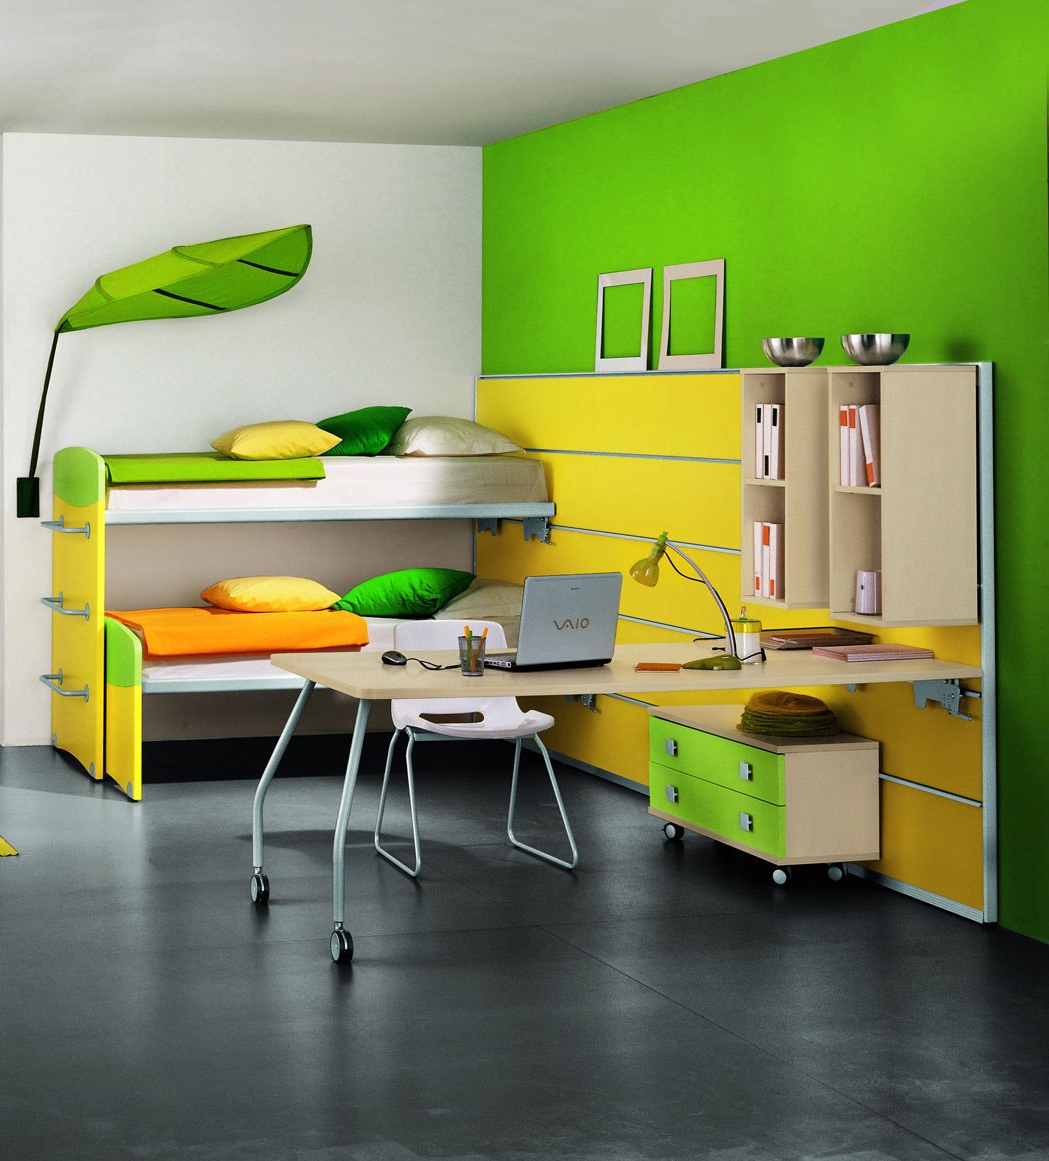 Мебель для детской комнаты (100 фото): выбираем стильную, корпусную, модульную мебель